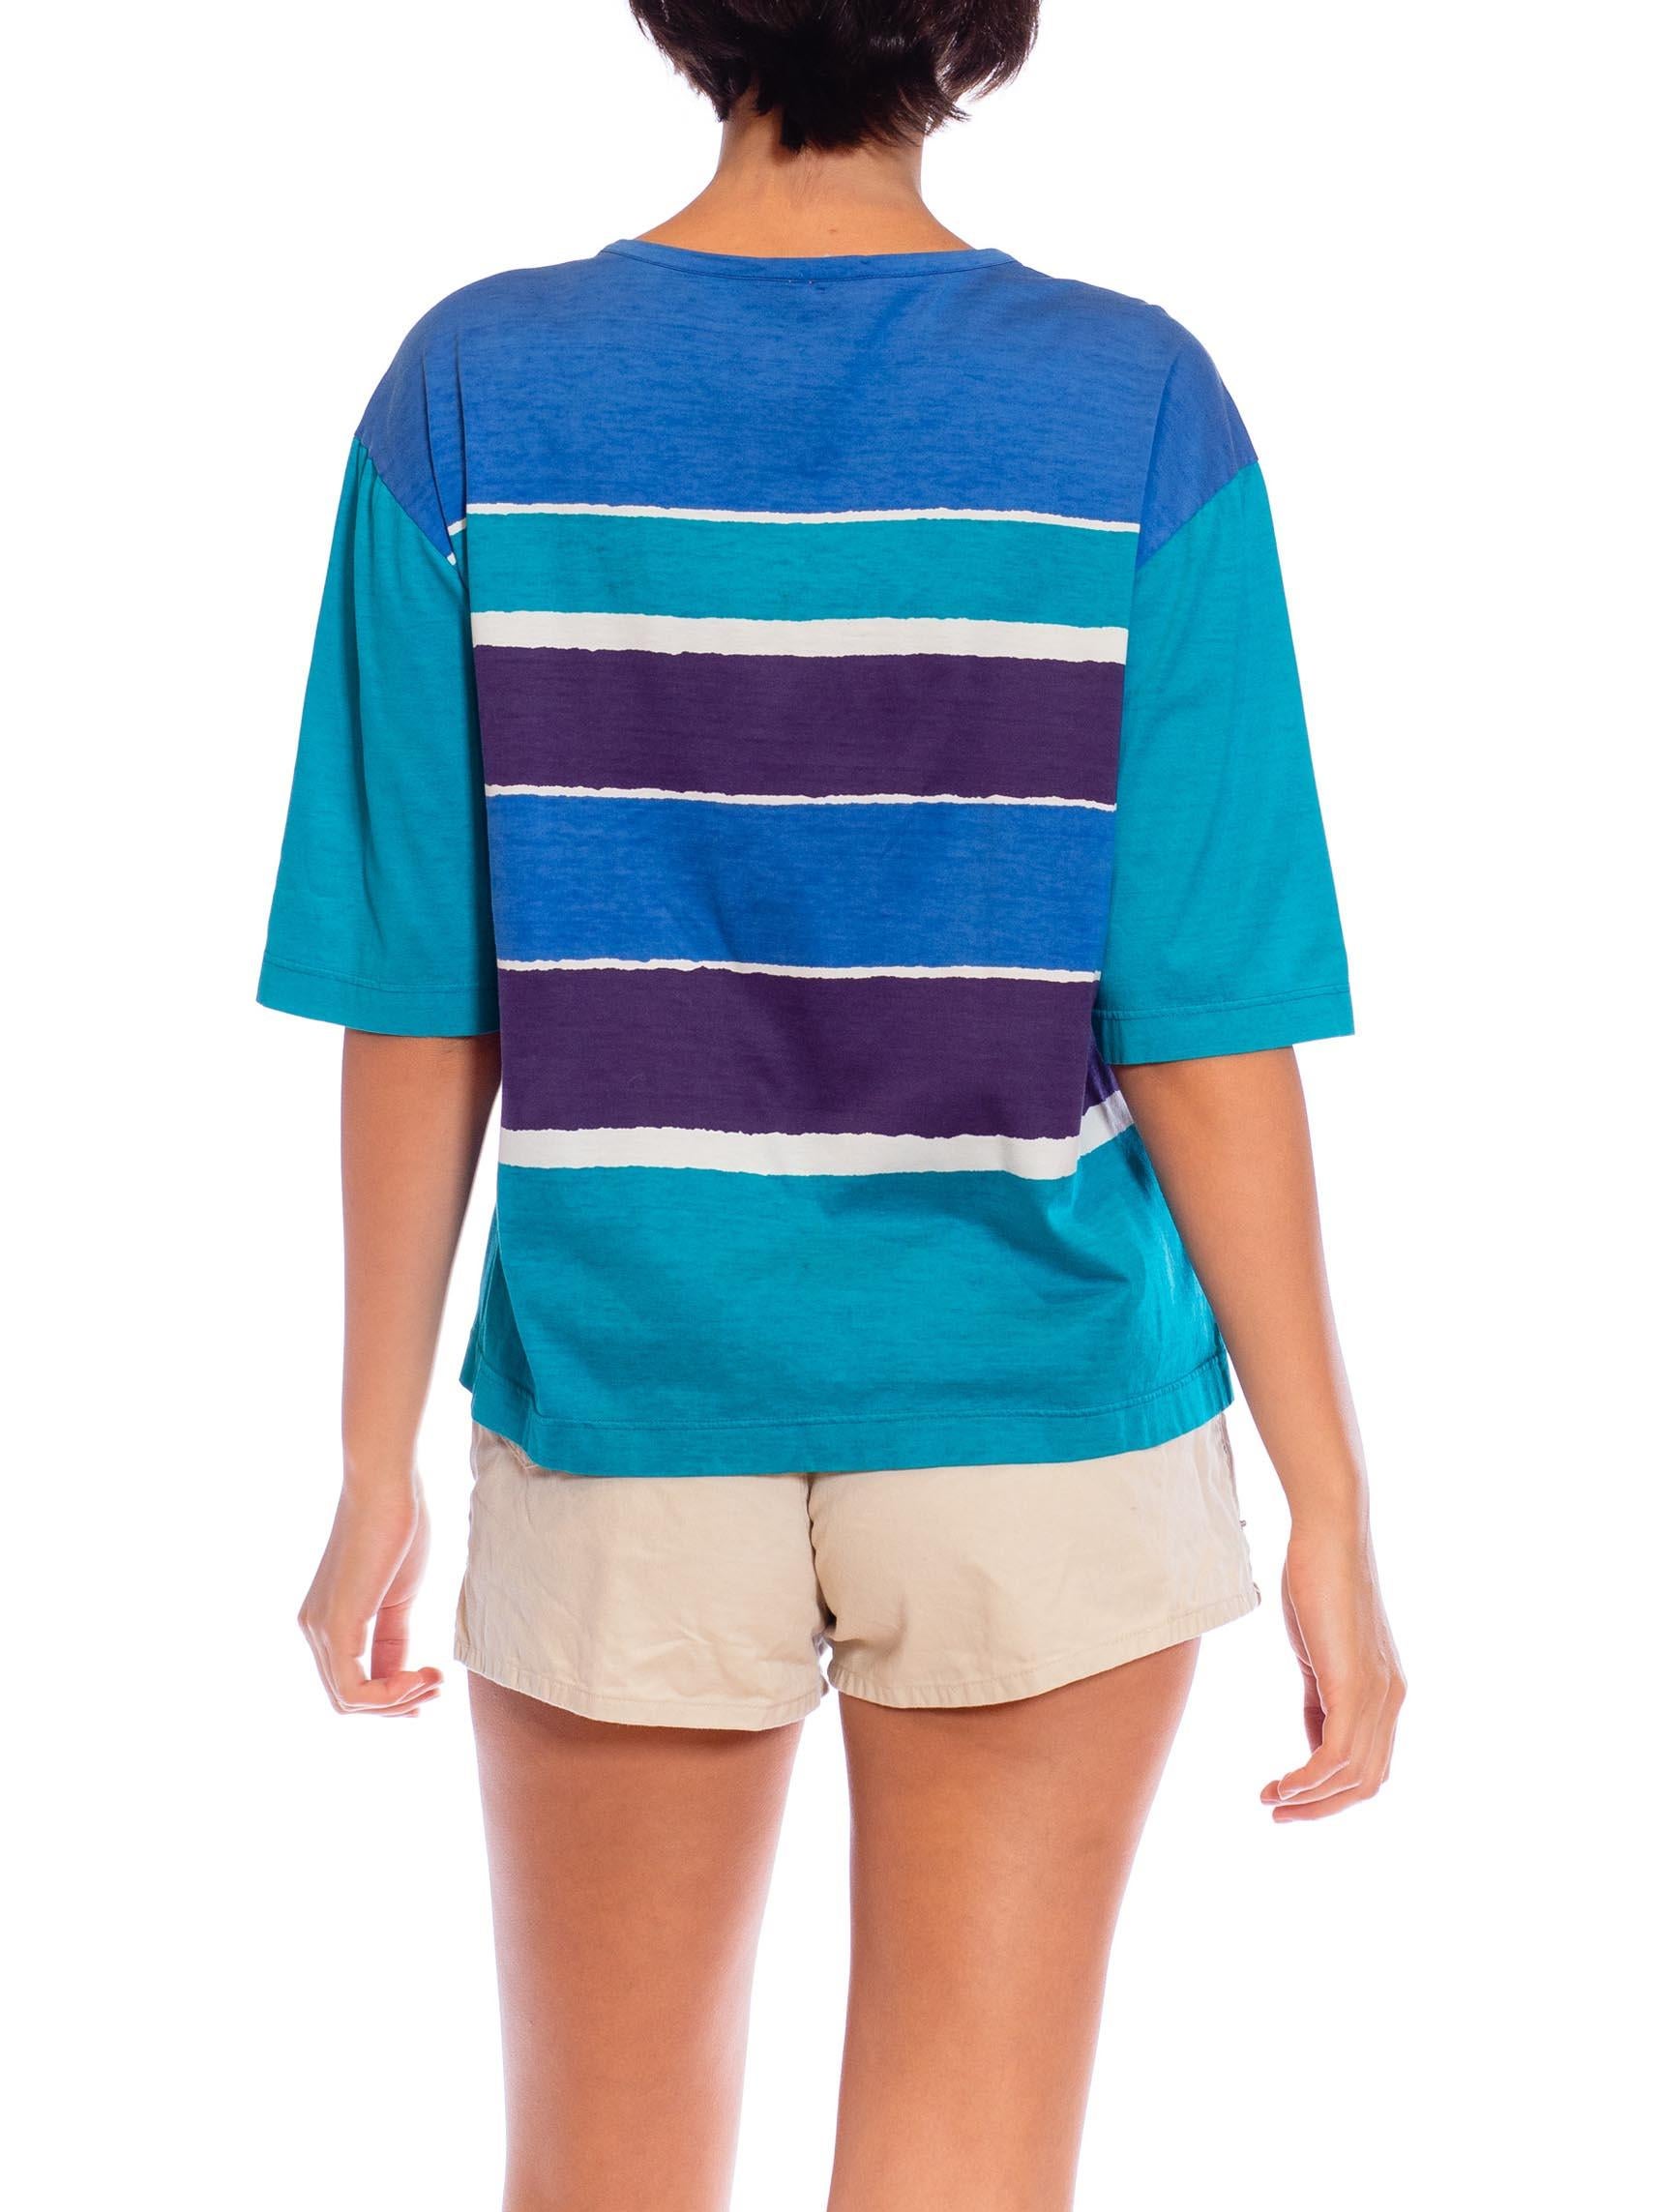 1970S YVES SAINT LAURENT Blue & Teal Cotton Jersey Rare Seashore Print T-Shirt For Sale 1